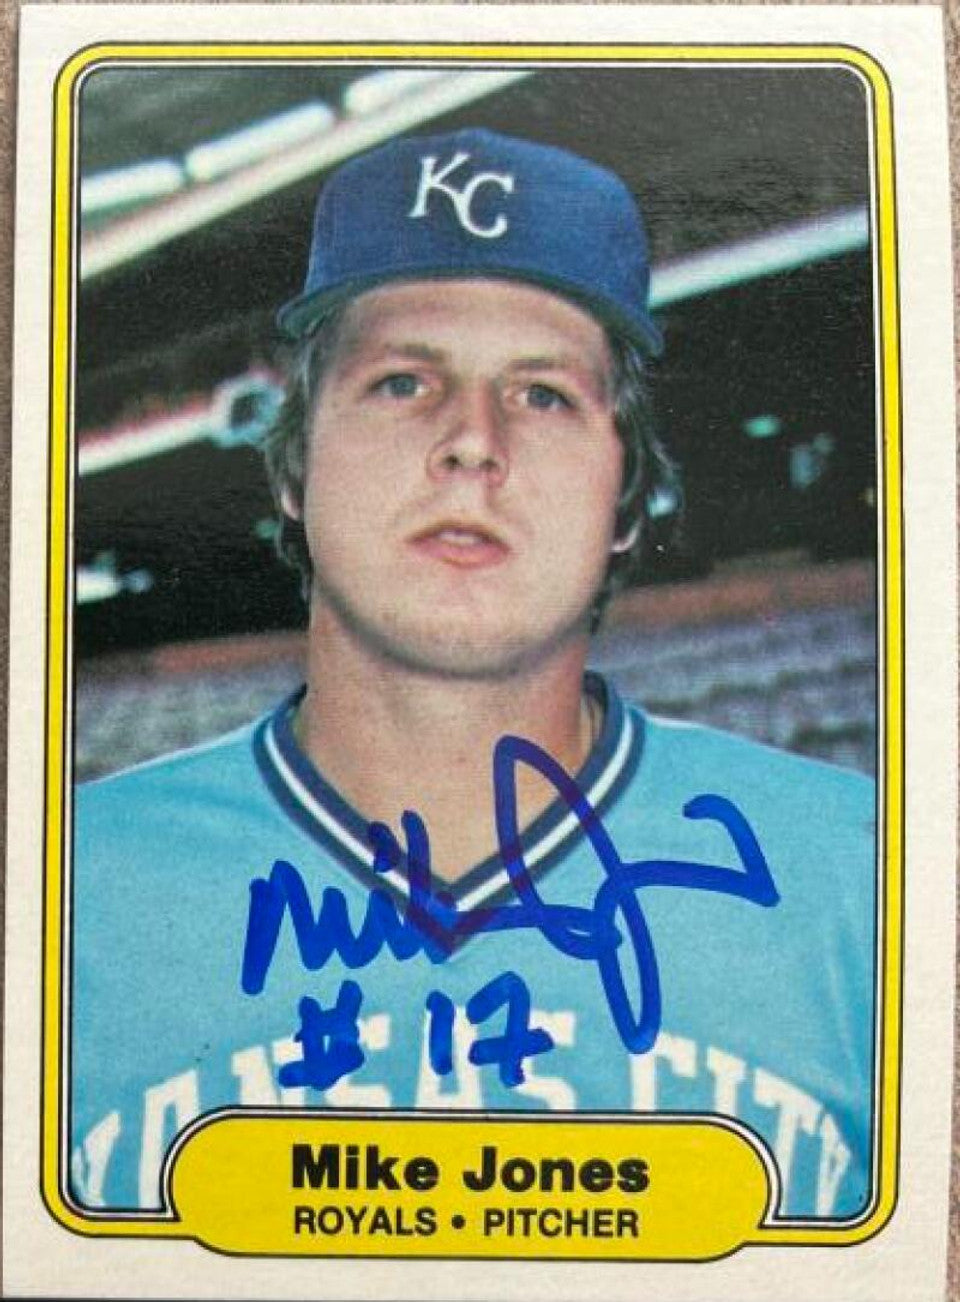 マイク・ジョーンズが署名した 1982 年のフリーア ベースボール カード - カンザスシティ ロイヤルズ